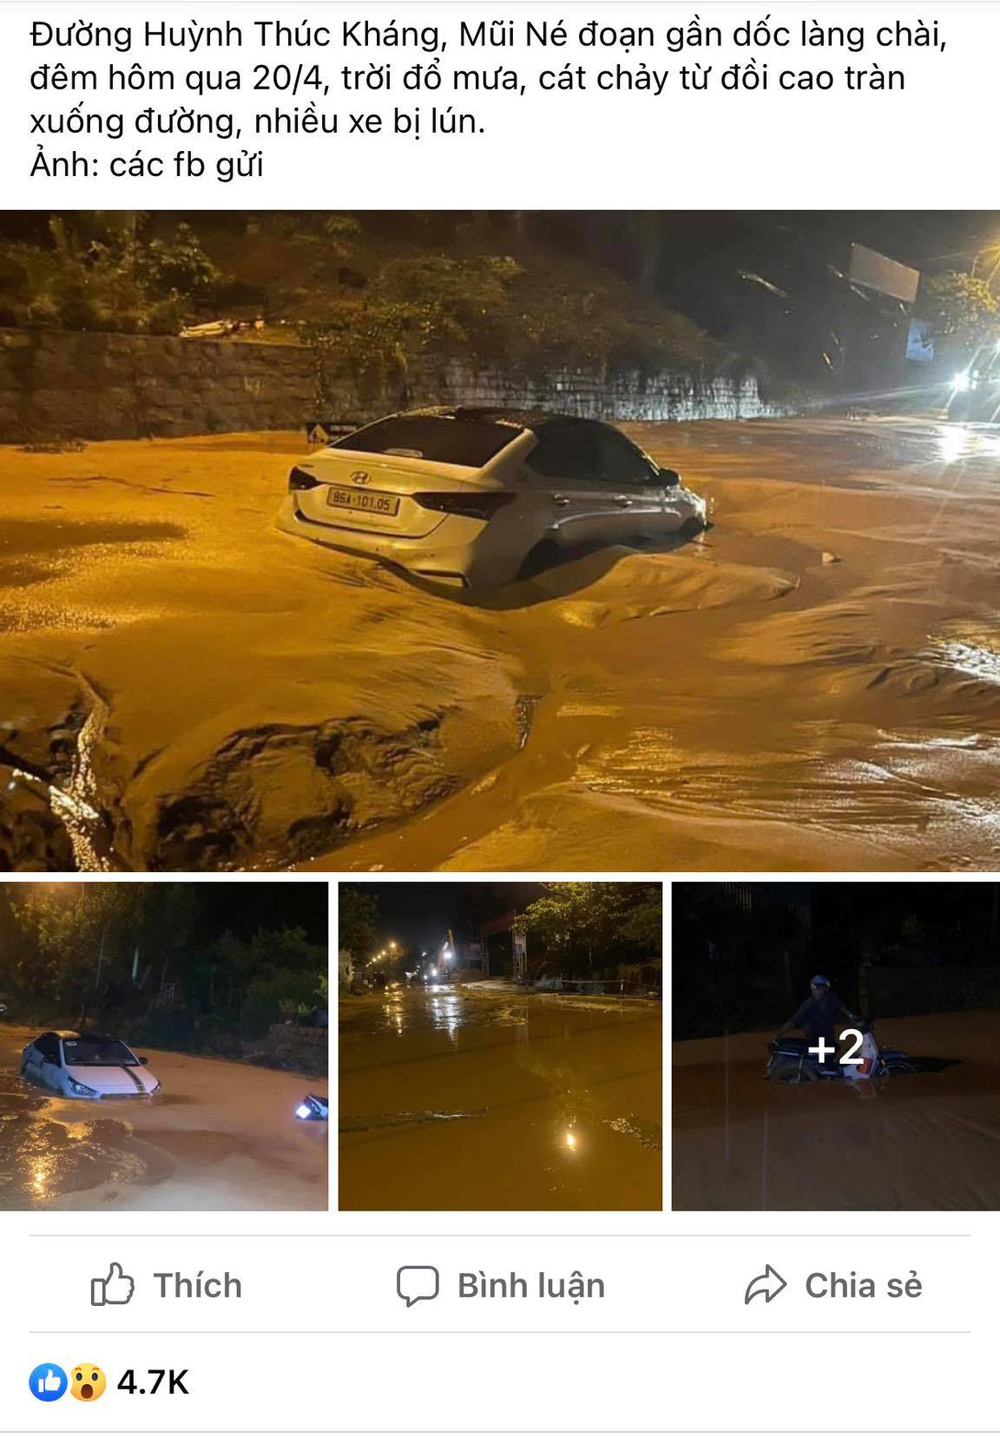 Bình Thuận: Mưa lớn làm cát chảy tràn xuống đường 'chôn' luôn xe hơi - Ảnh 1